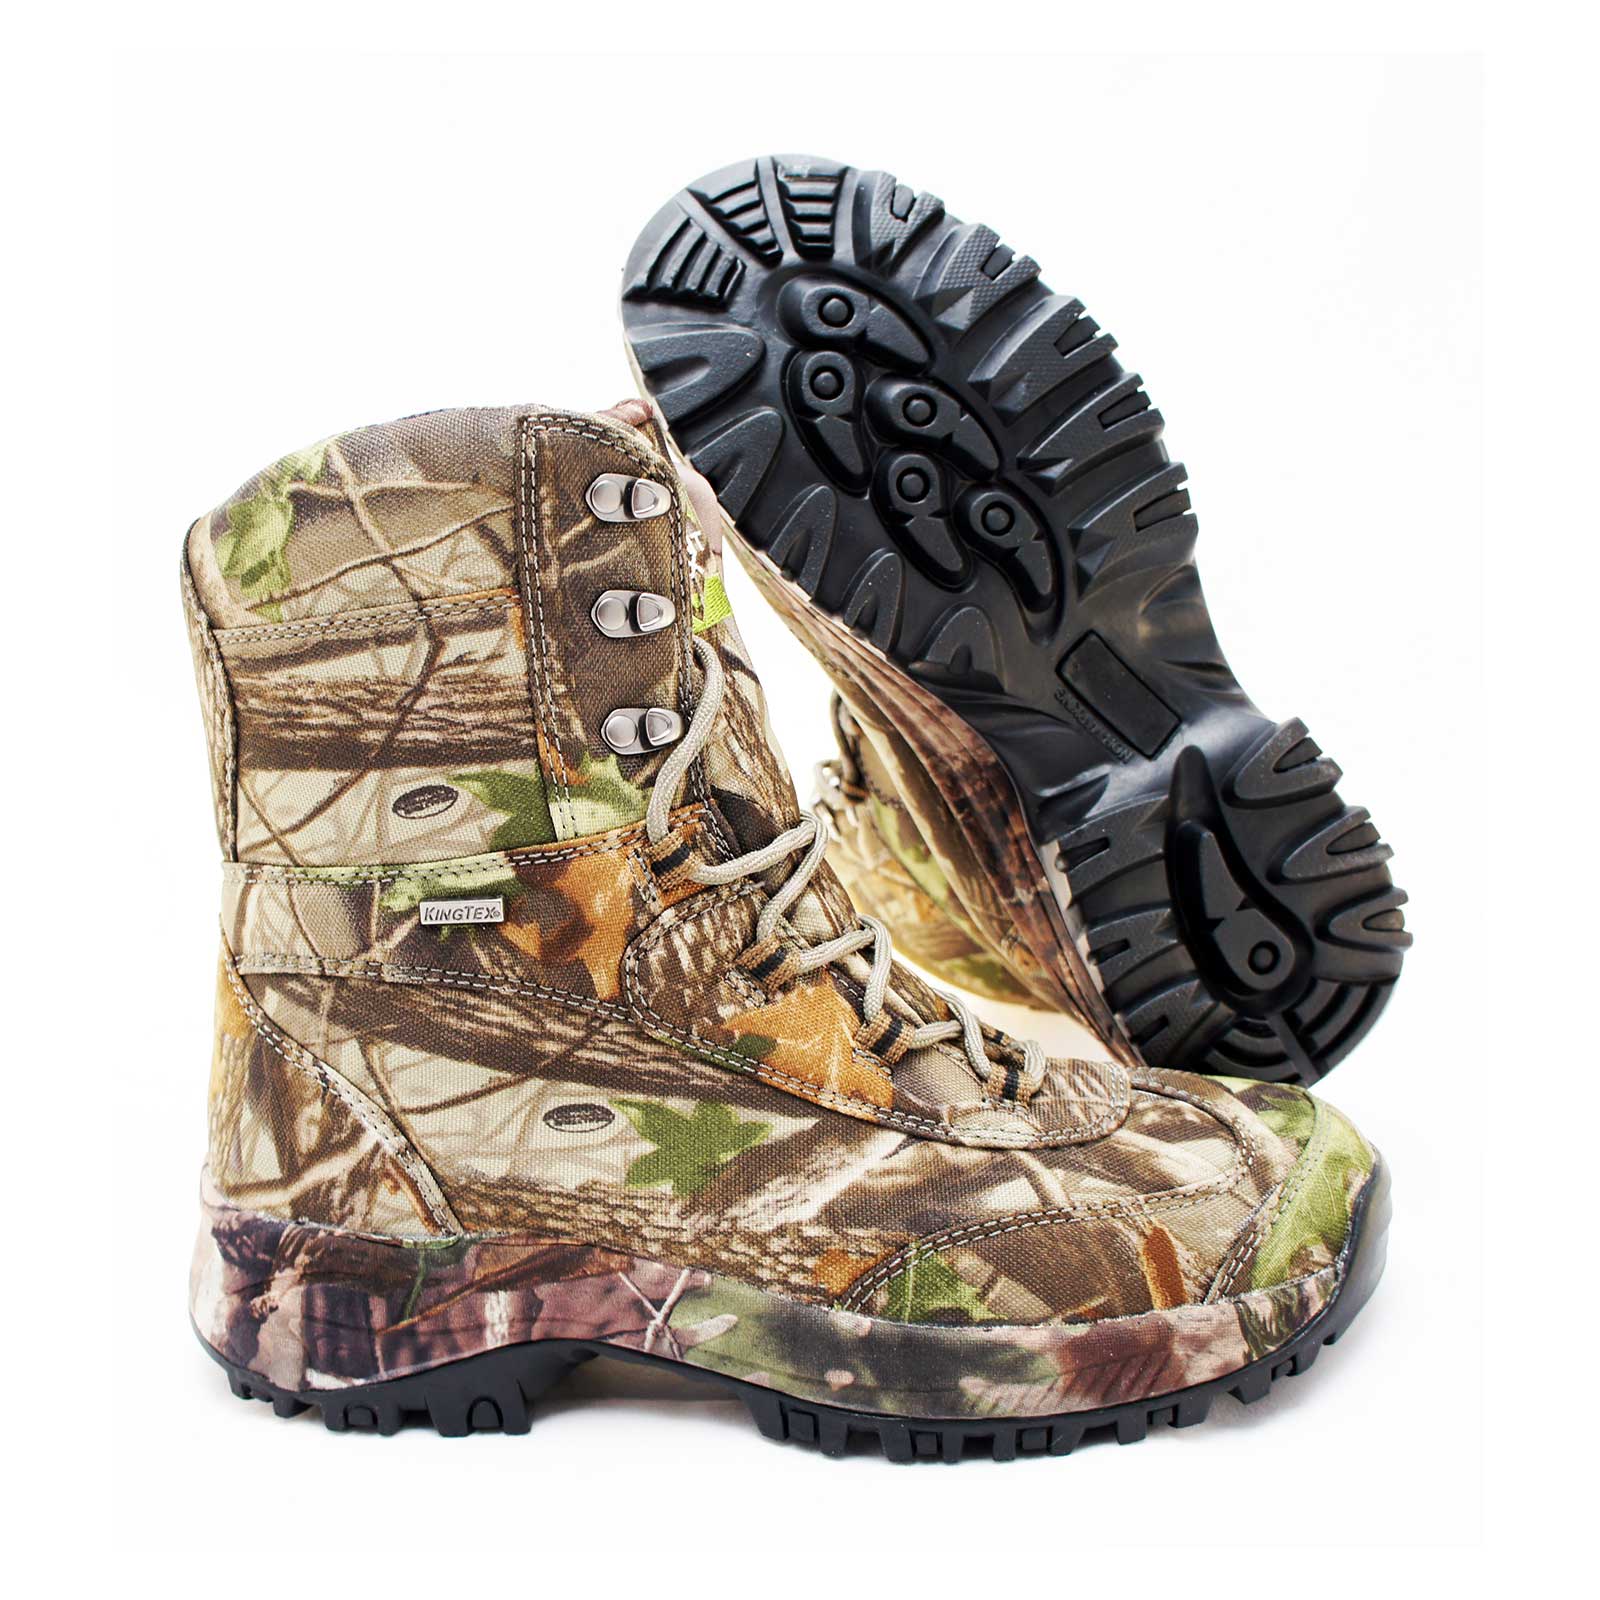 Обувь/Носки :: Обувь :: Высокие ботинки для охоты мужские Silent Fox SoftPaws Waterproof High Hunting Boots